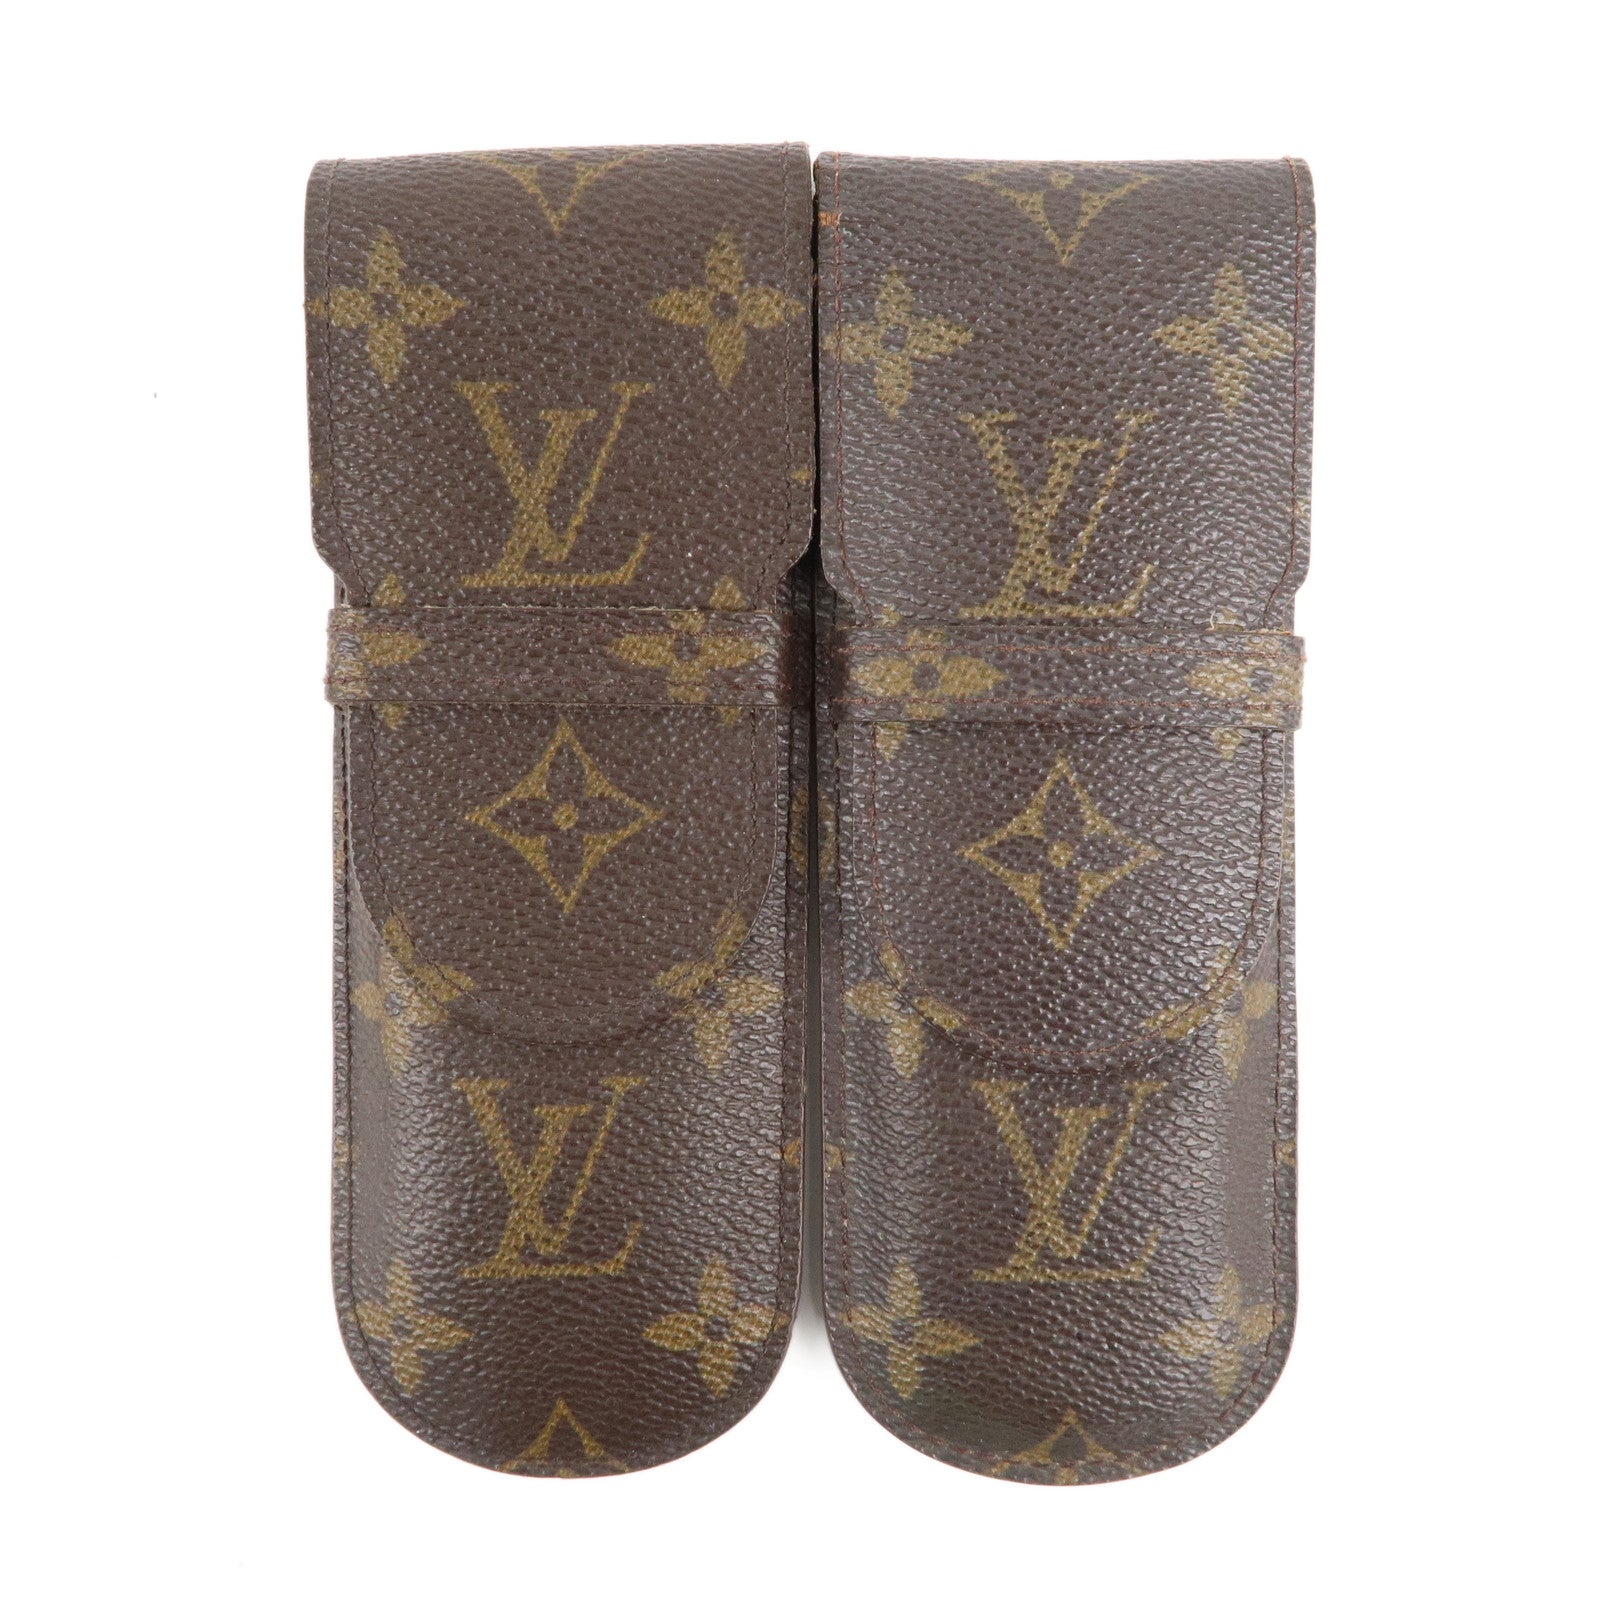 Louis-Vuitton-Set-of-2-etui-stylo-Pen-Case-M30364-M62990 – dct